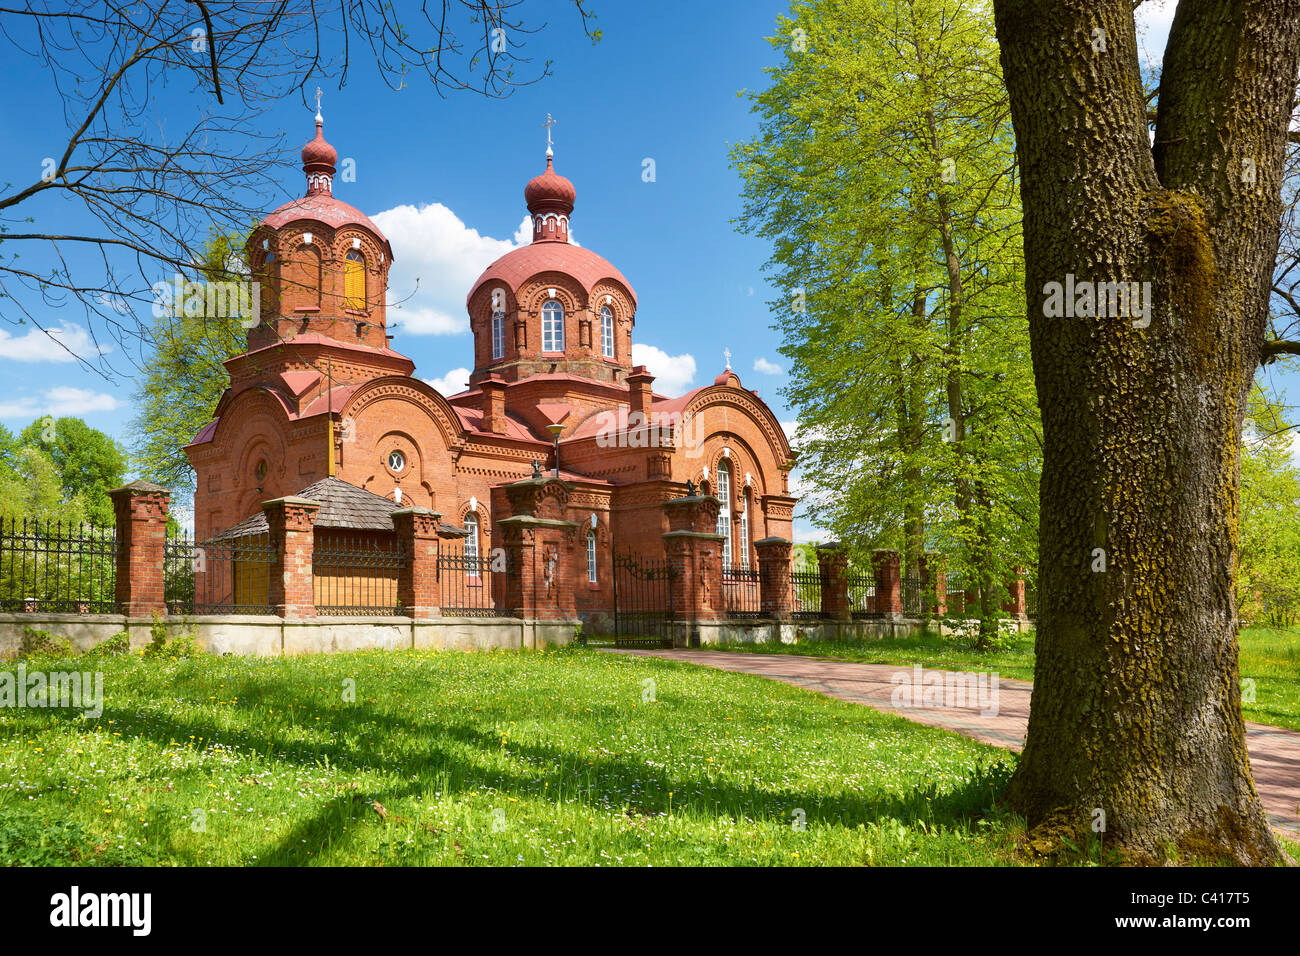 Bialowieza-orthodox church, Podlasie region, Poland Stock Photo